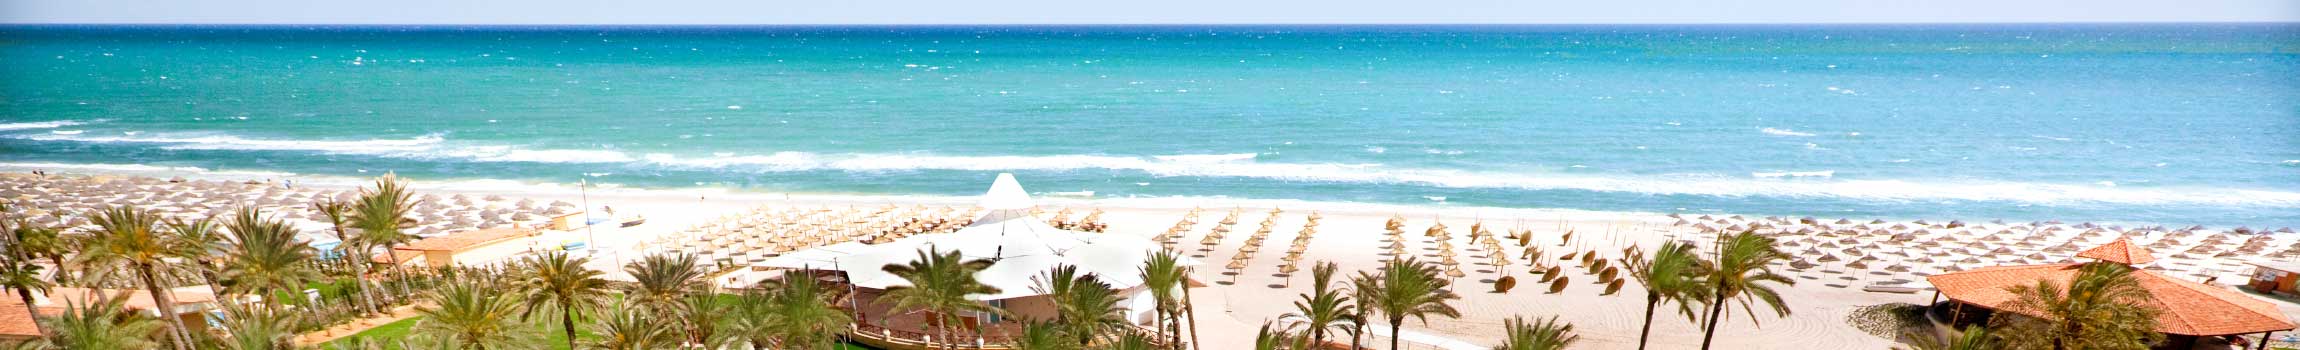 Kristallklares Wasser, feinsandiger Strand, Palmen und Flair in der tunesischen Stadt Sousse